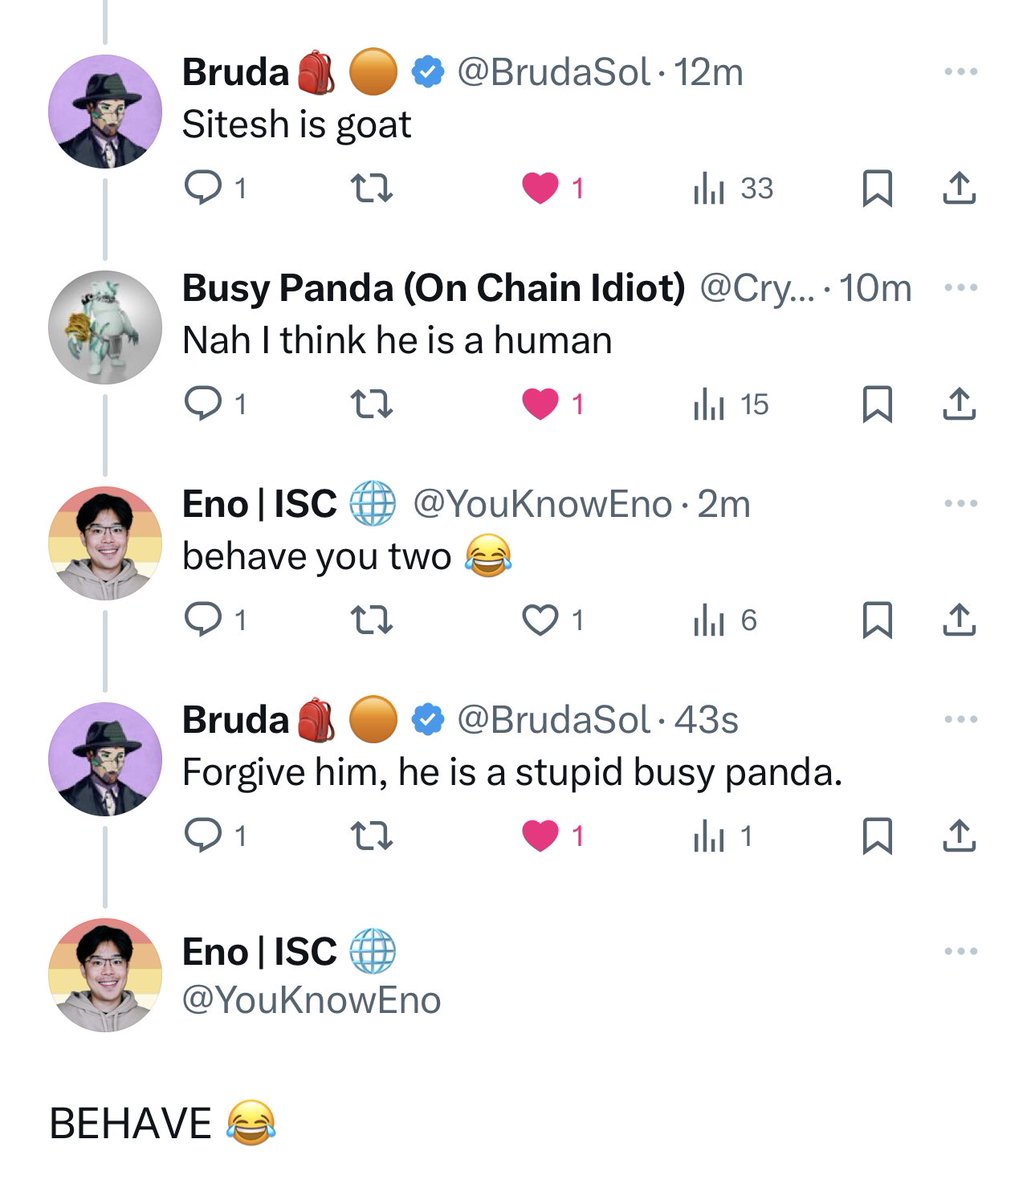 bruda, a stupid busy panda, and a stablecoin maxi shitposter walk into a bar…